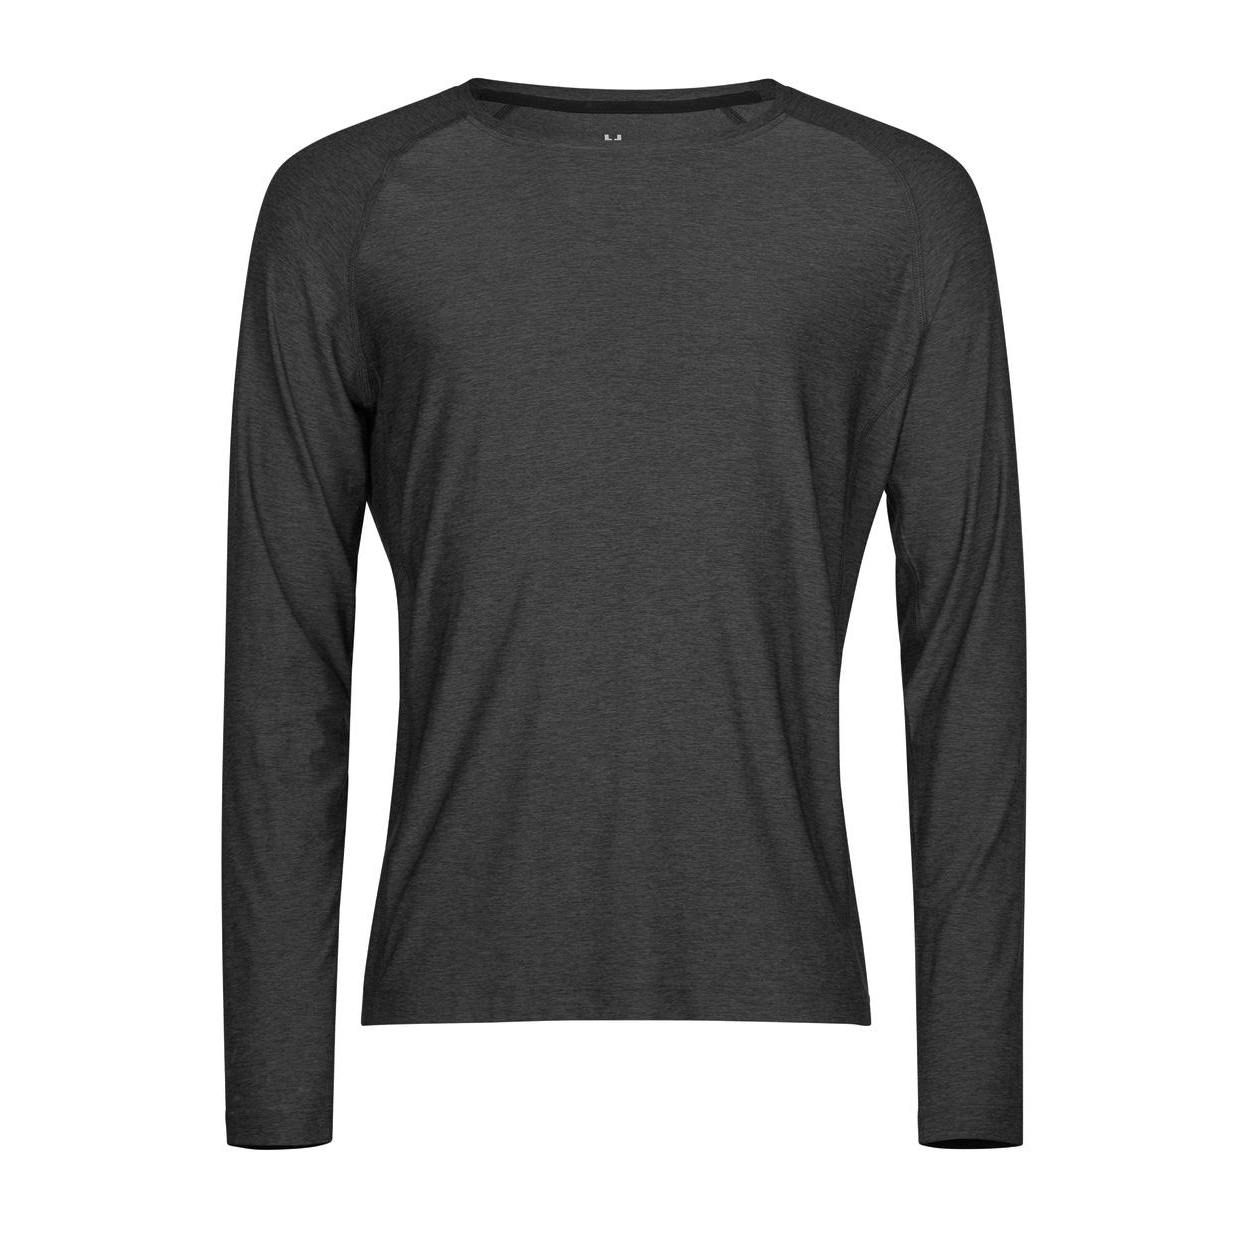 Triko pánské Stedman Tee Jays CoolDry tričko s dlouhými rukávy - tmavě šedé, XS